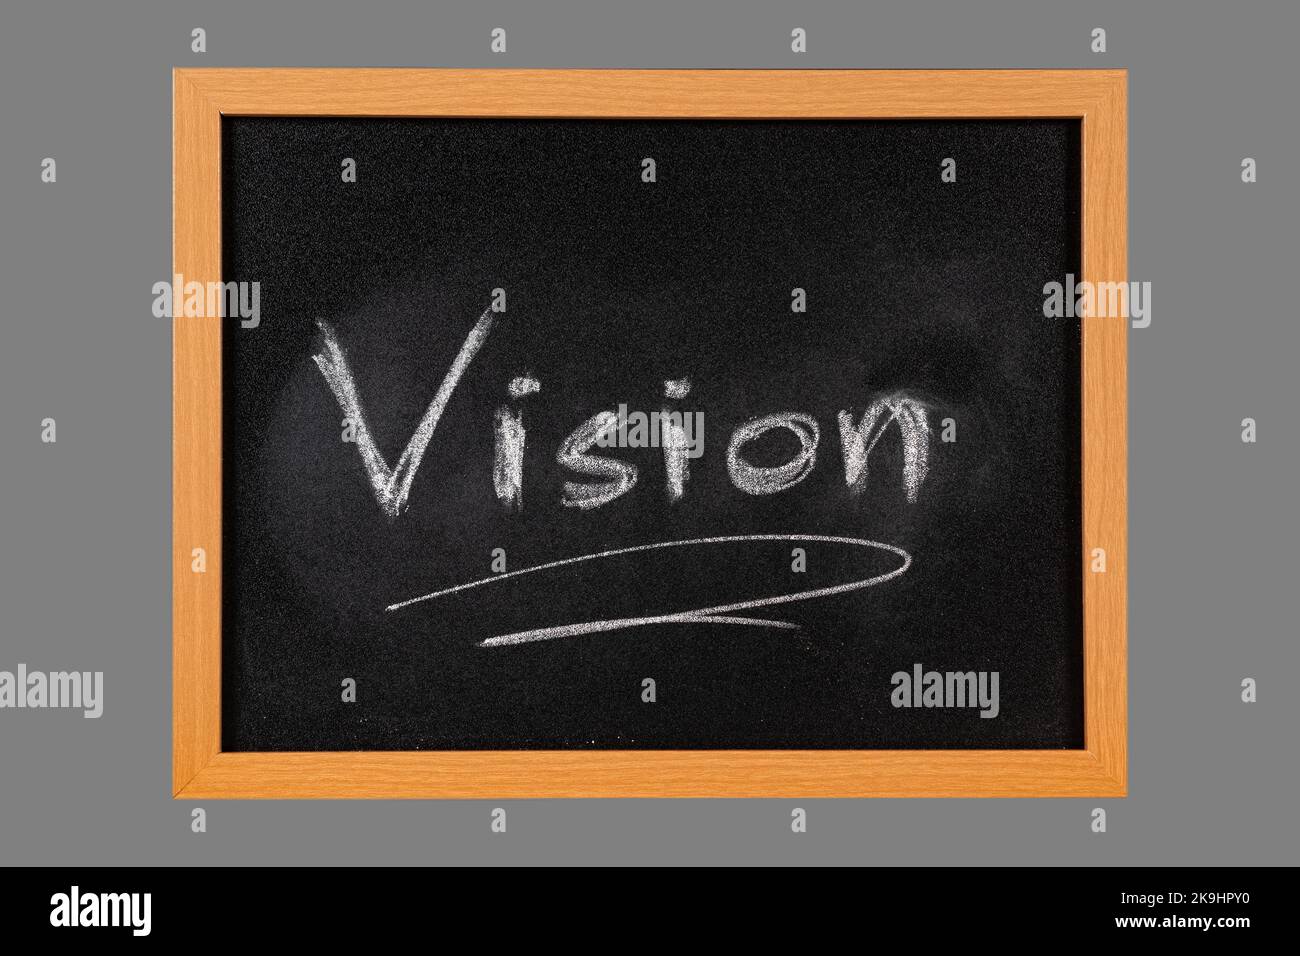 La parola visione manoscritta con gesso bianco su lavagna con cornice di legno, isolata su fondo grigio medio Foto Stock